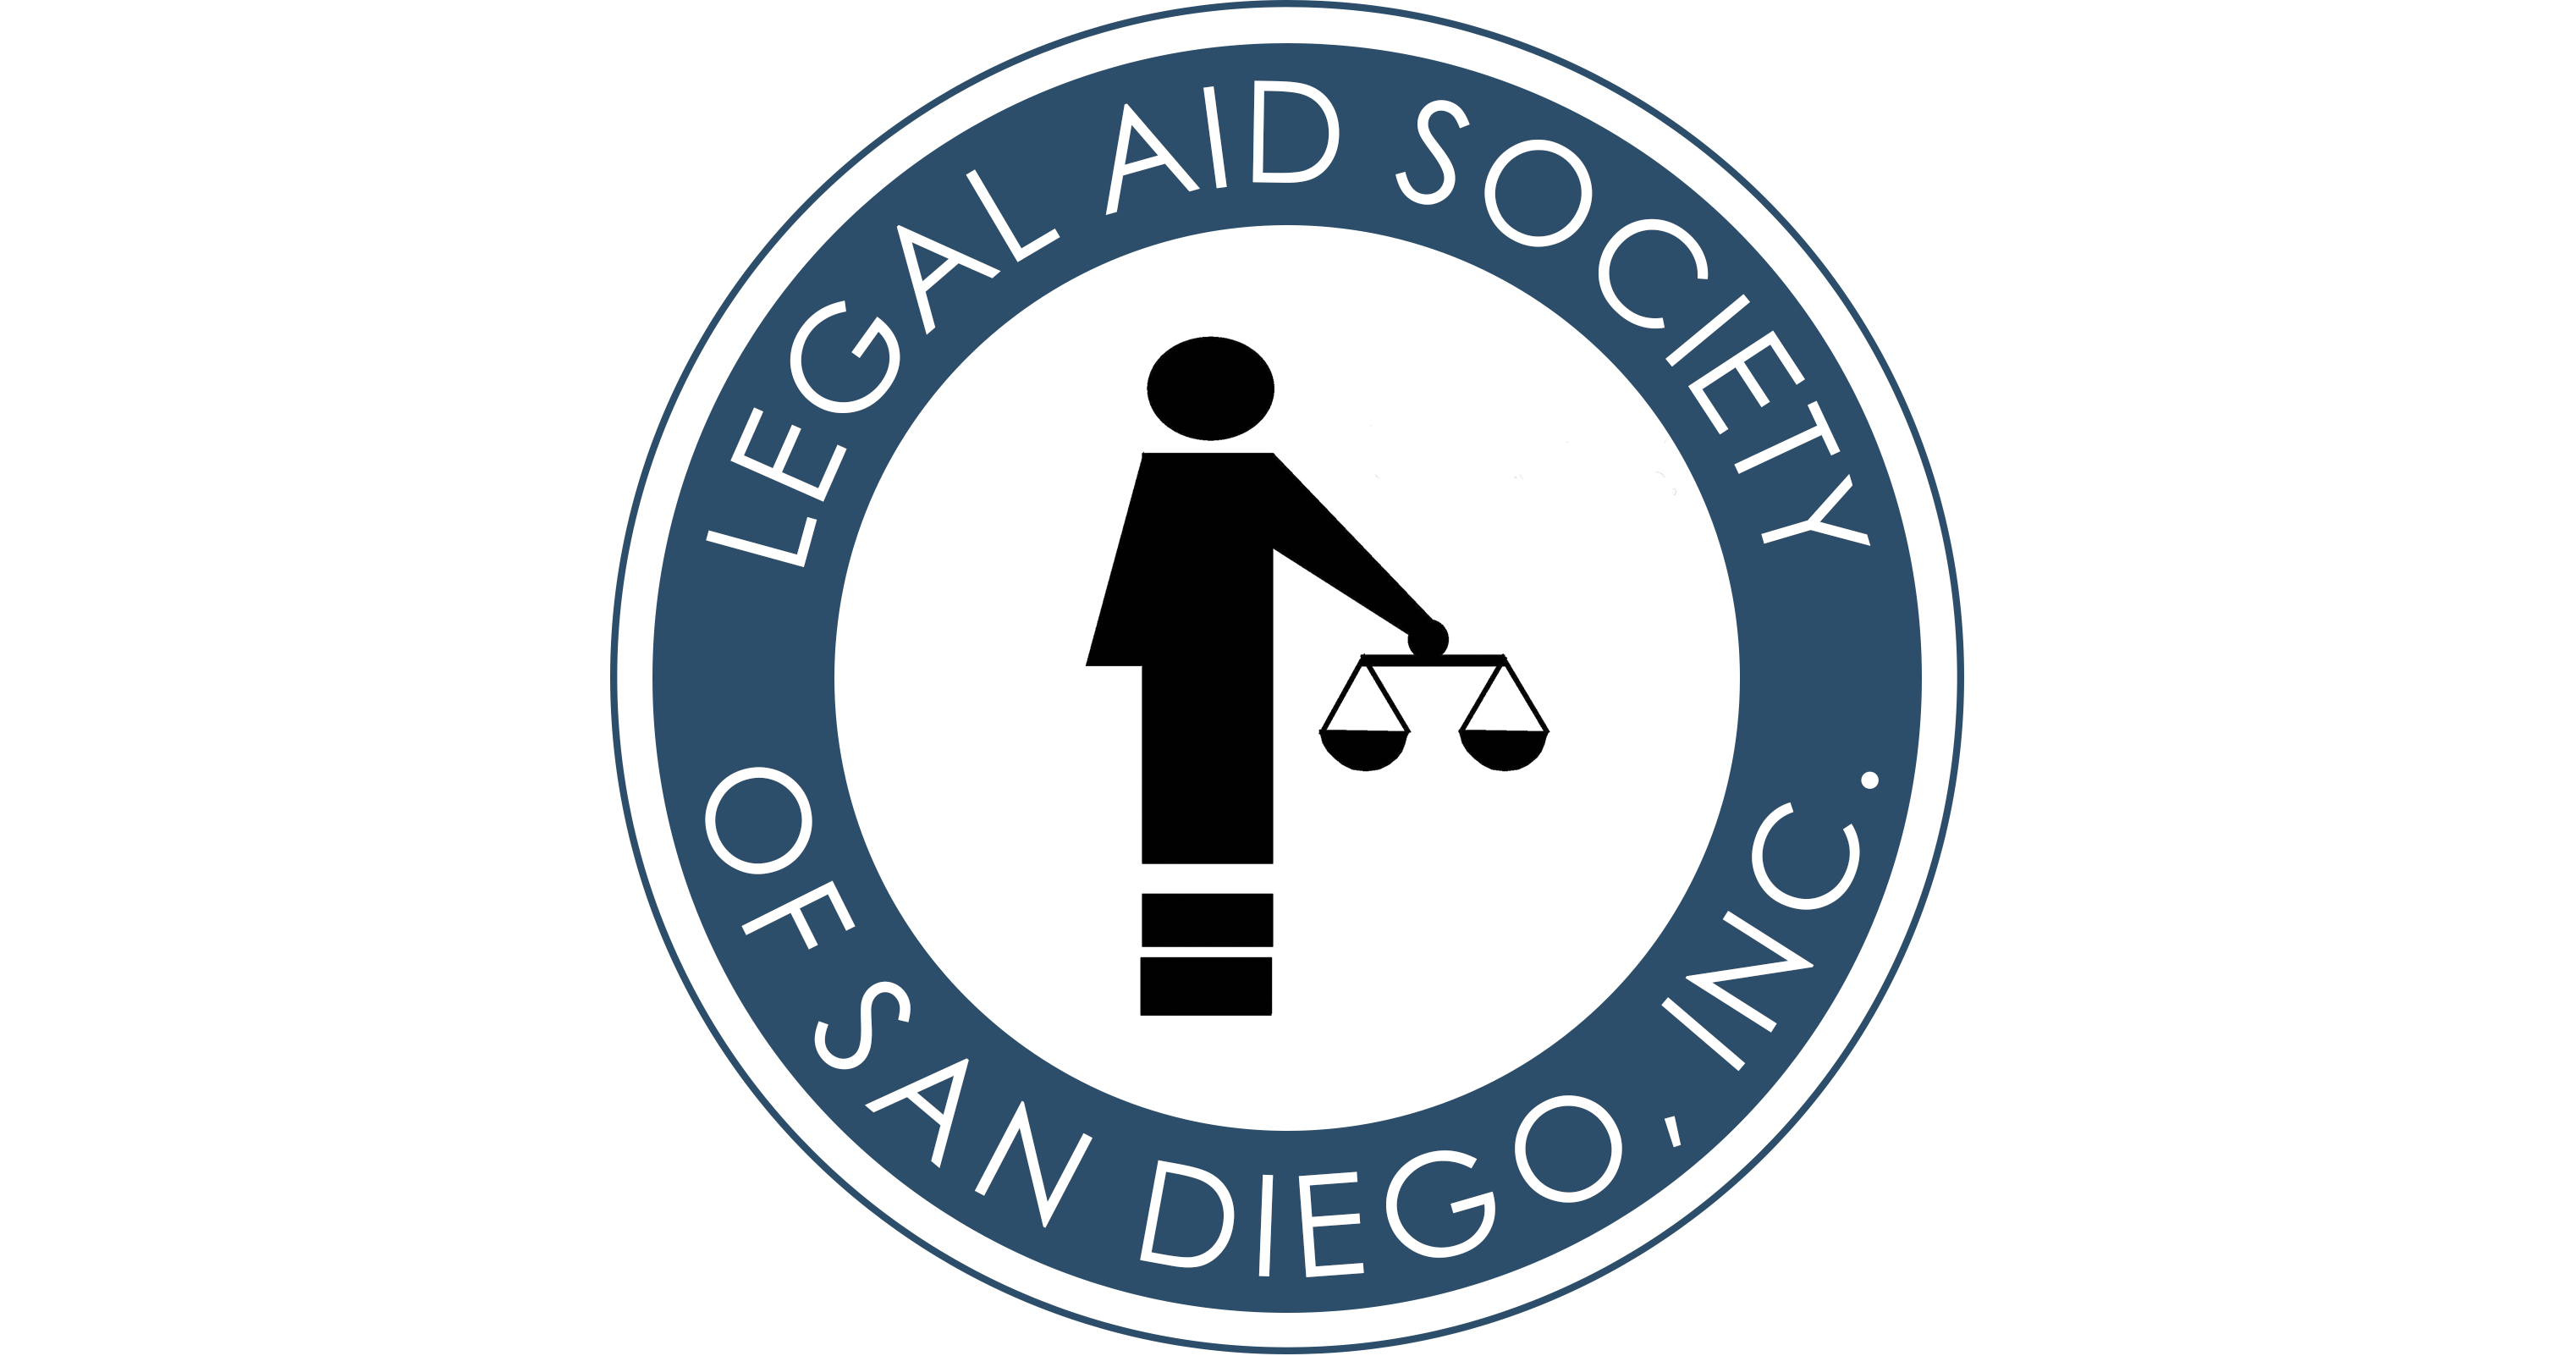 Legal Aid Society Of San Diego Advocate Fair Housing